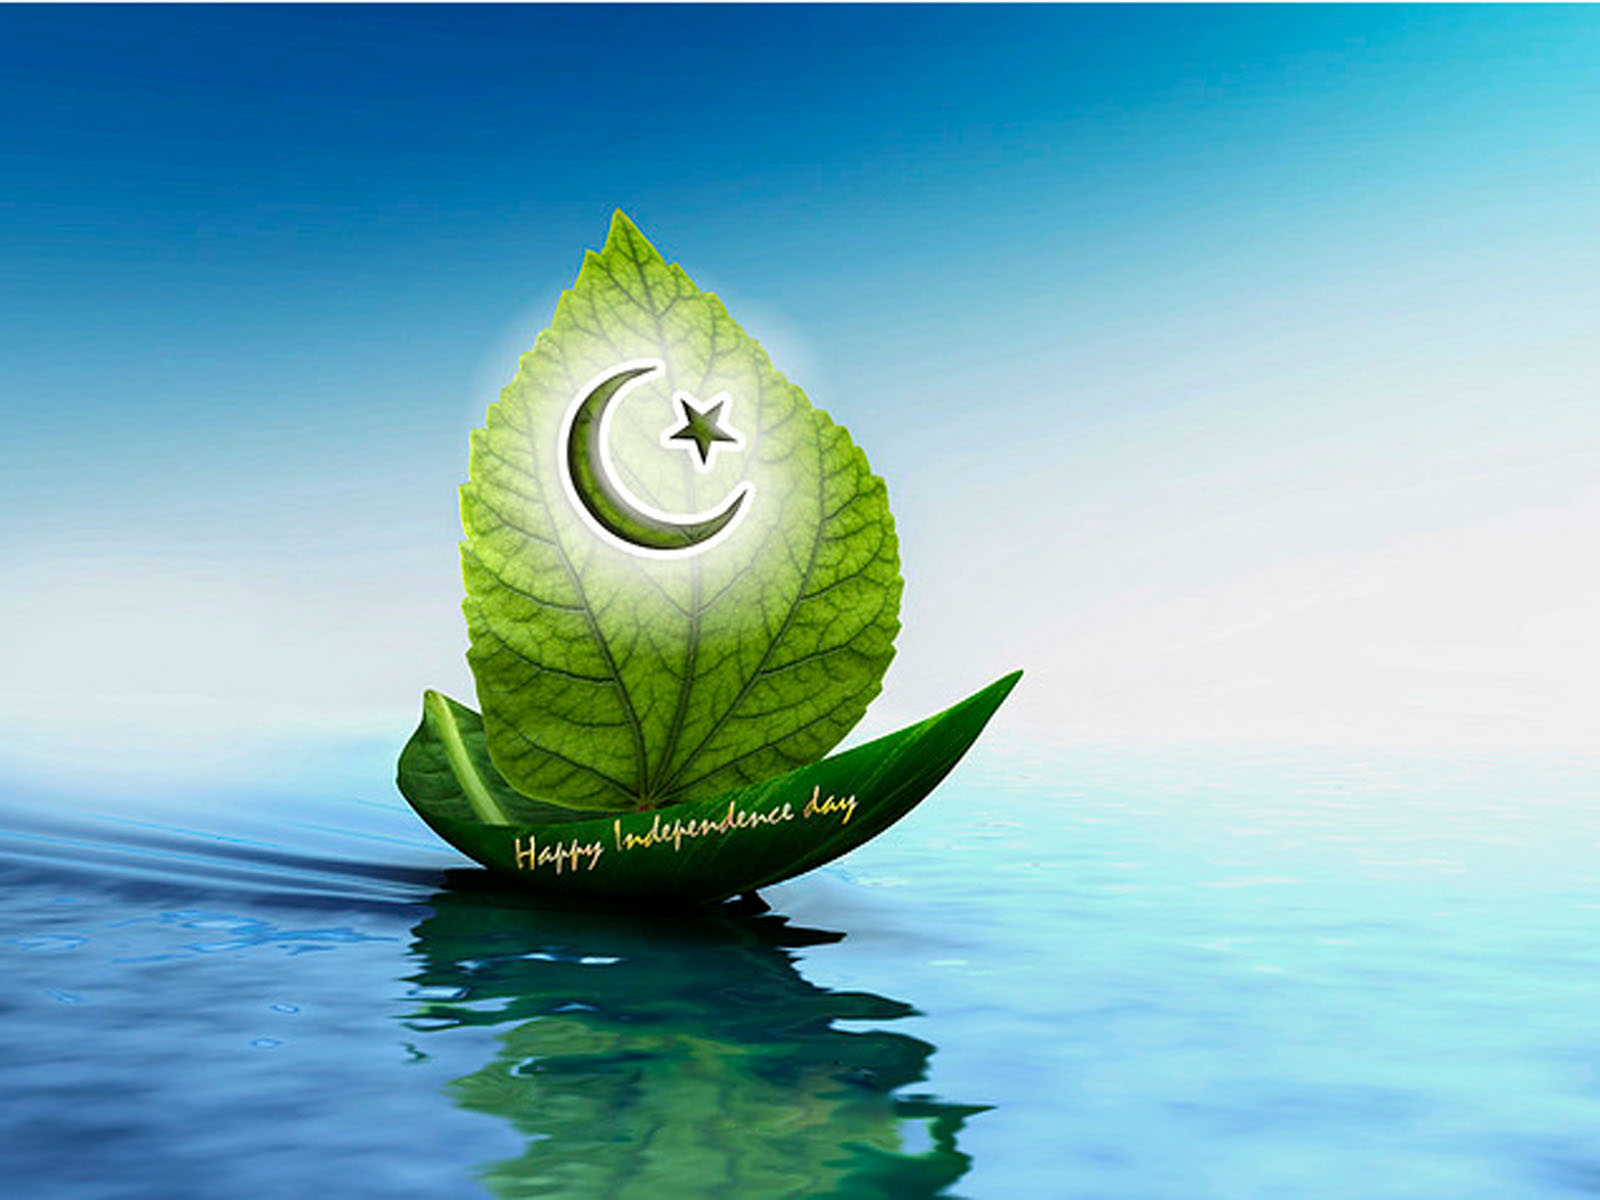 パキスタンの旗の壁紙,水,水資源,葉,空,工場